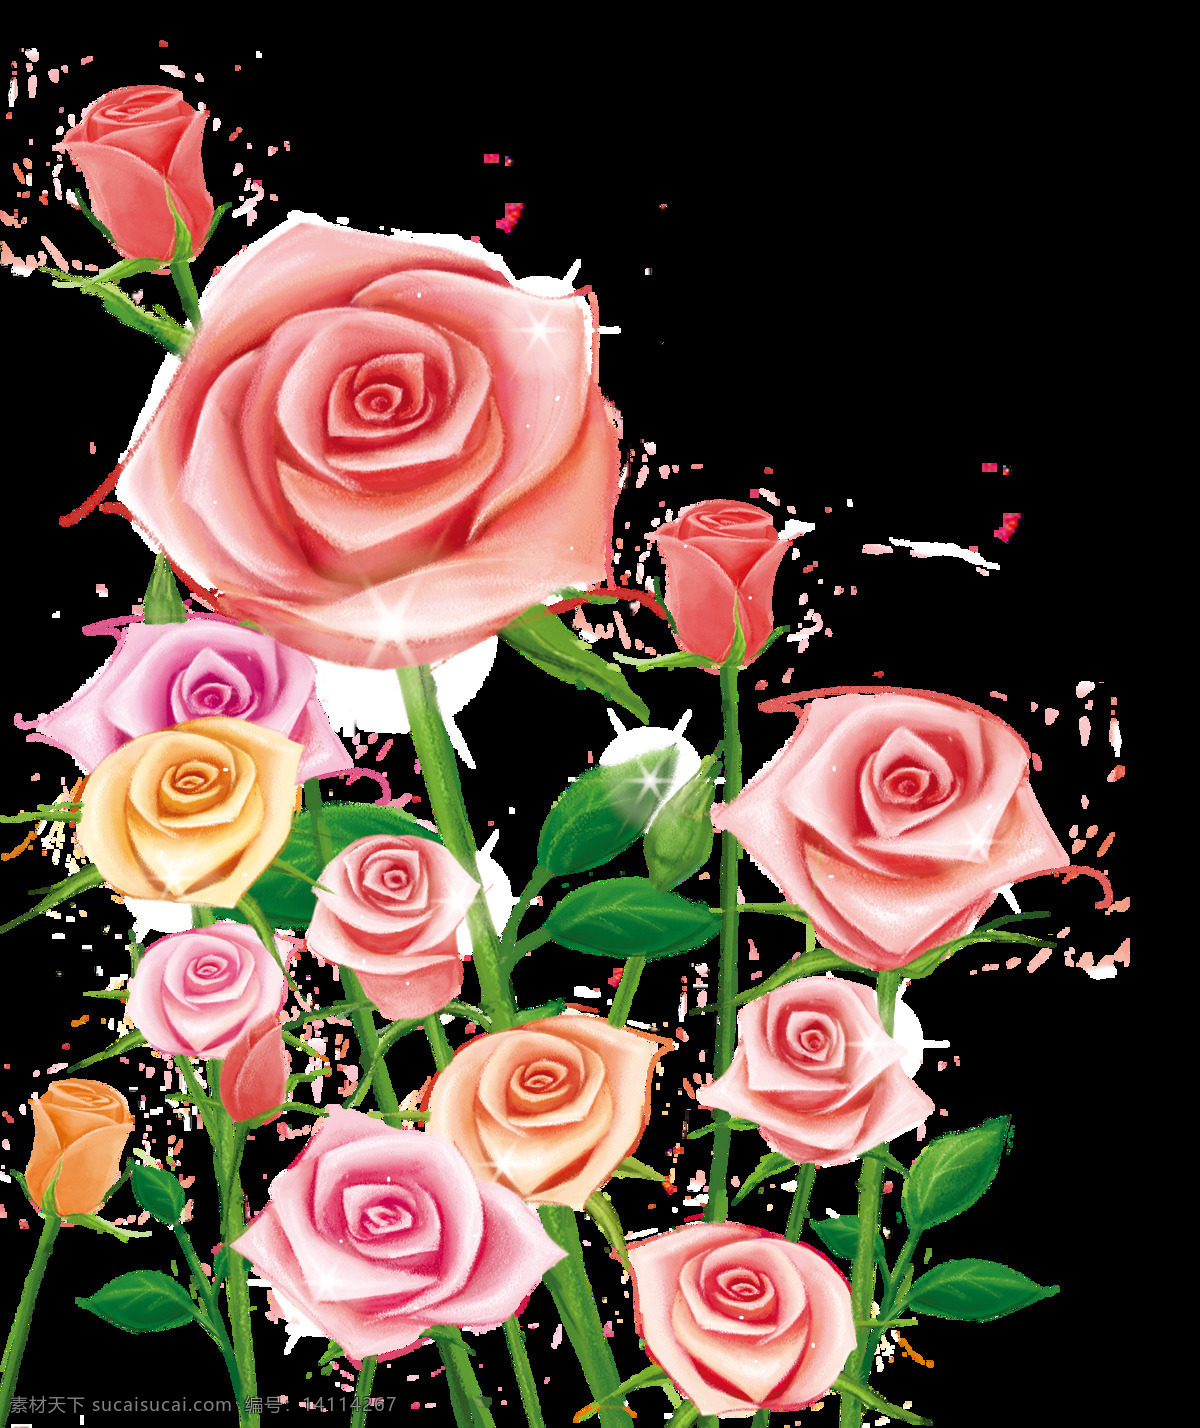 清新 手绘 捧 花 装饰 元素 浅色花枝 深粉色花束 装饰元素 红色花束 手绘花朵